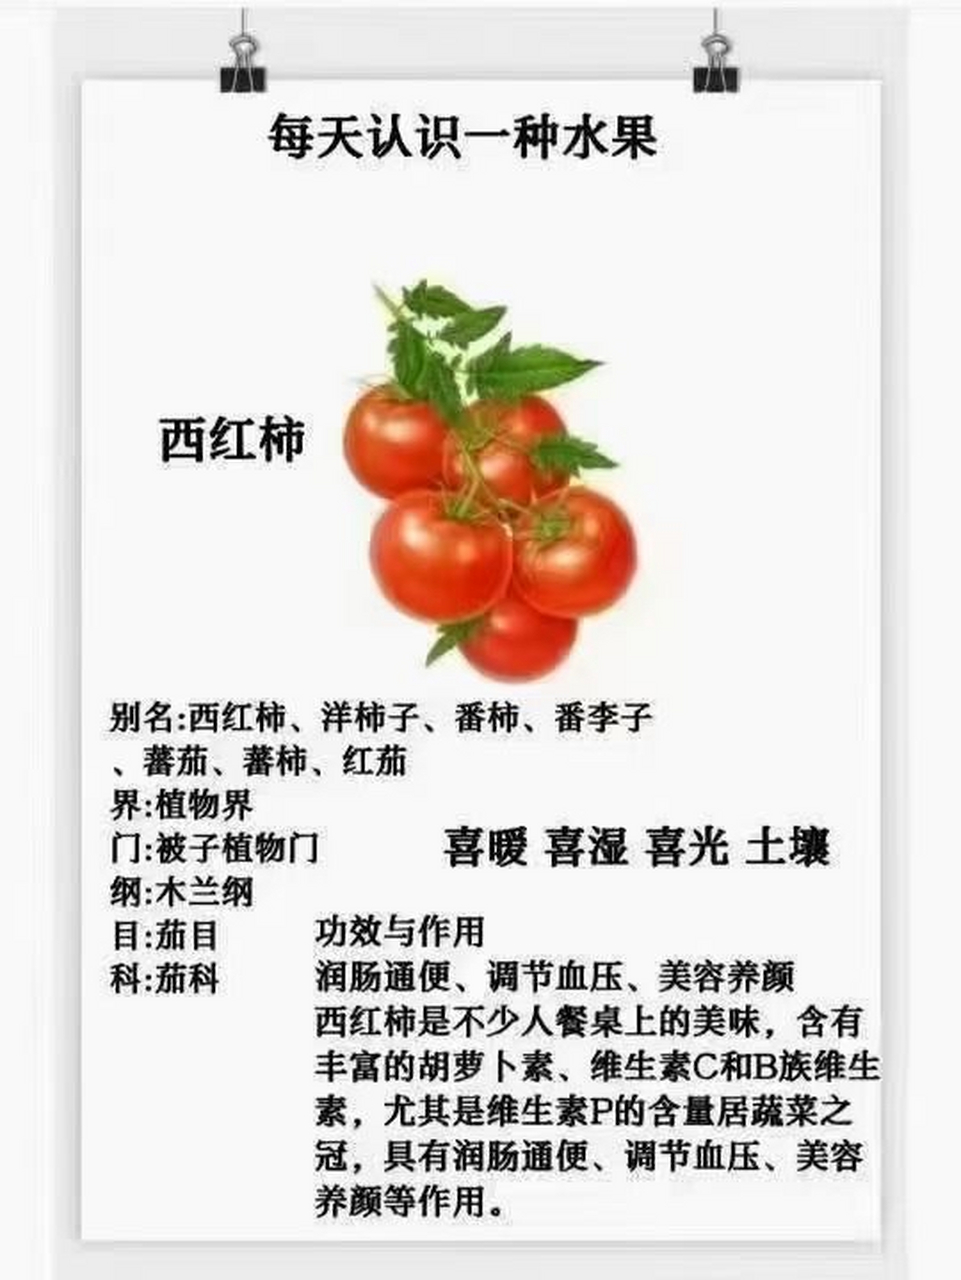 西红柿简介资料图片